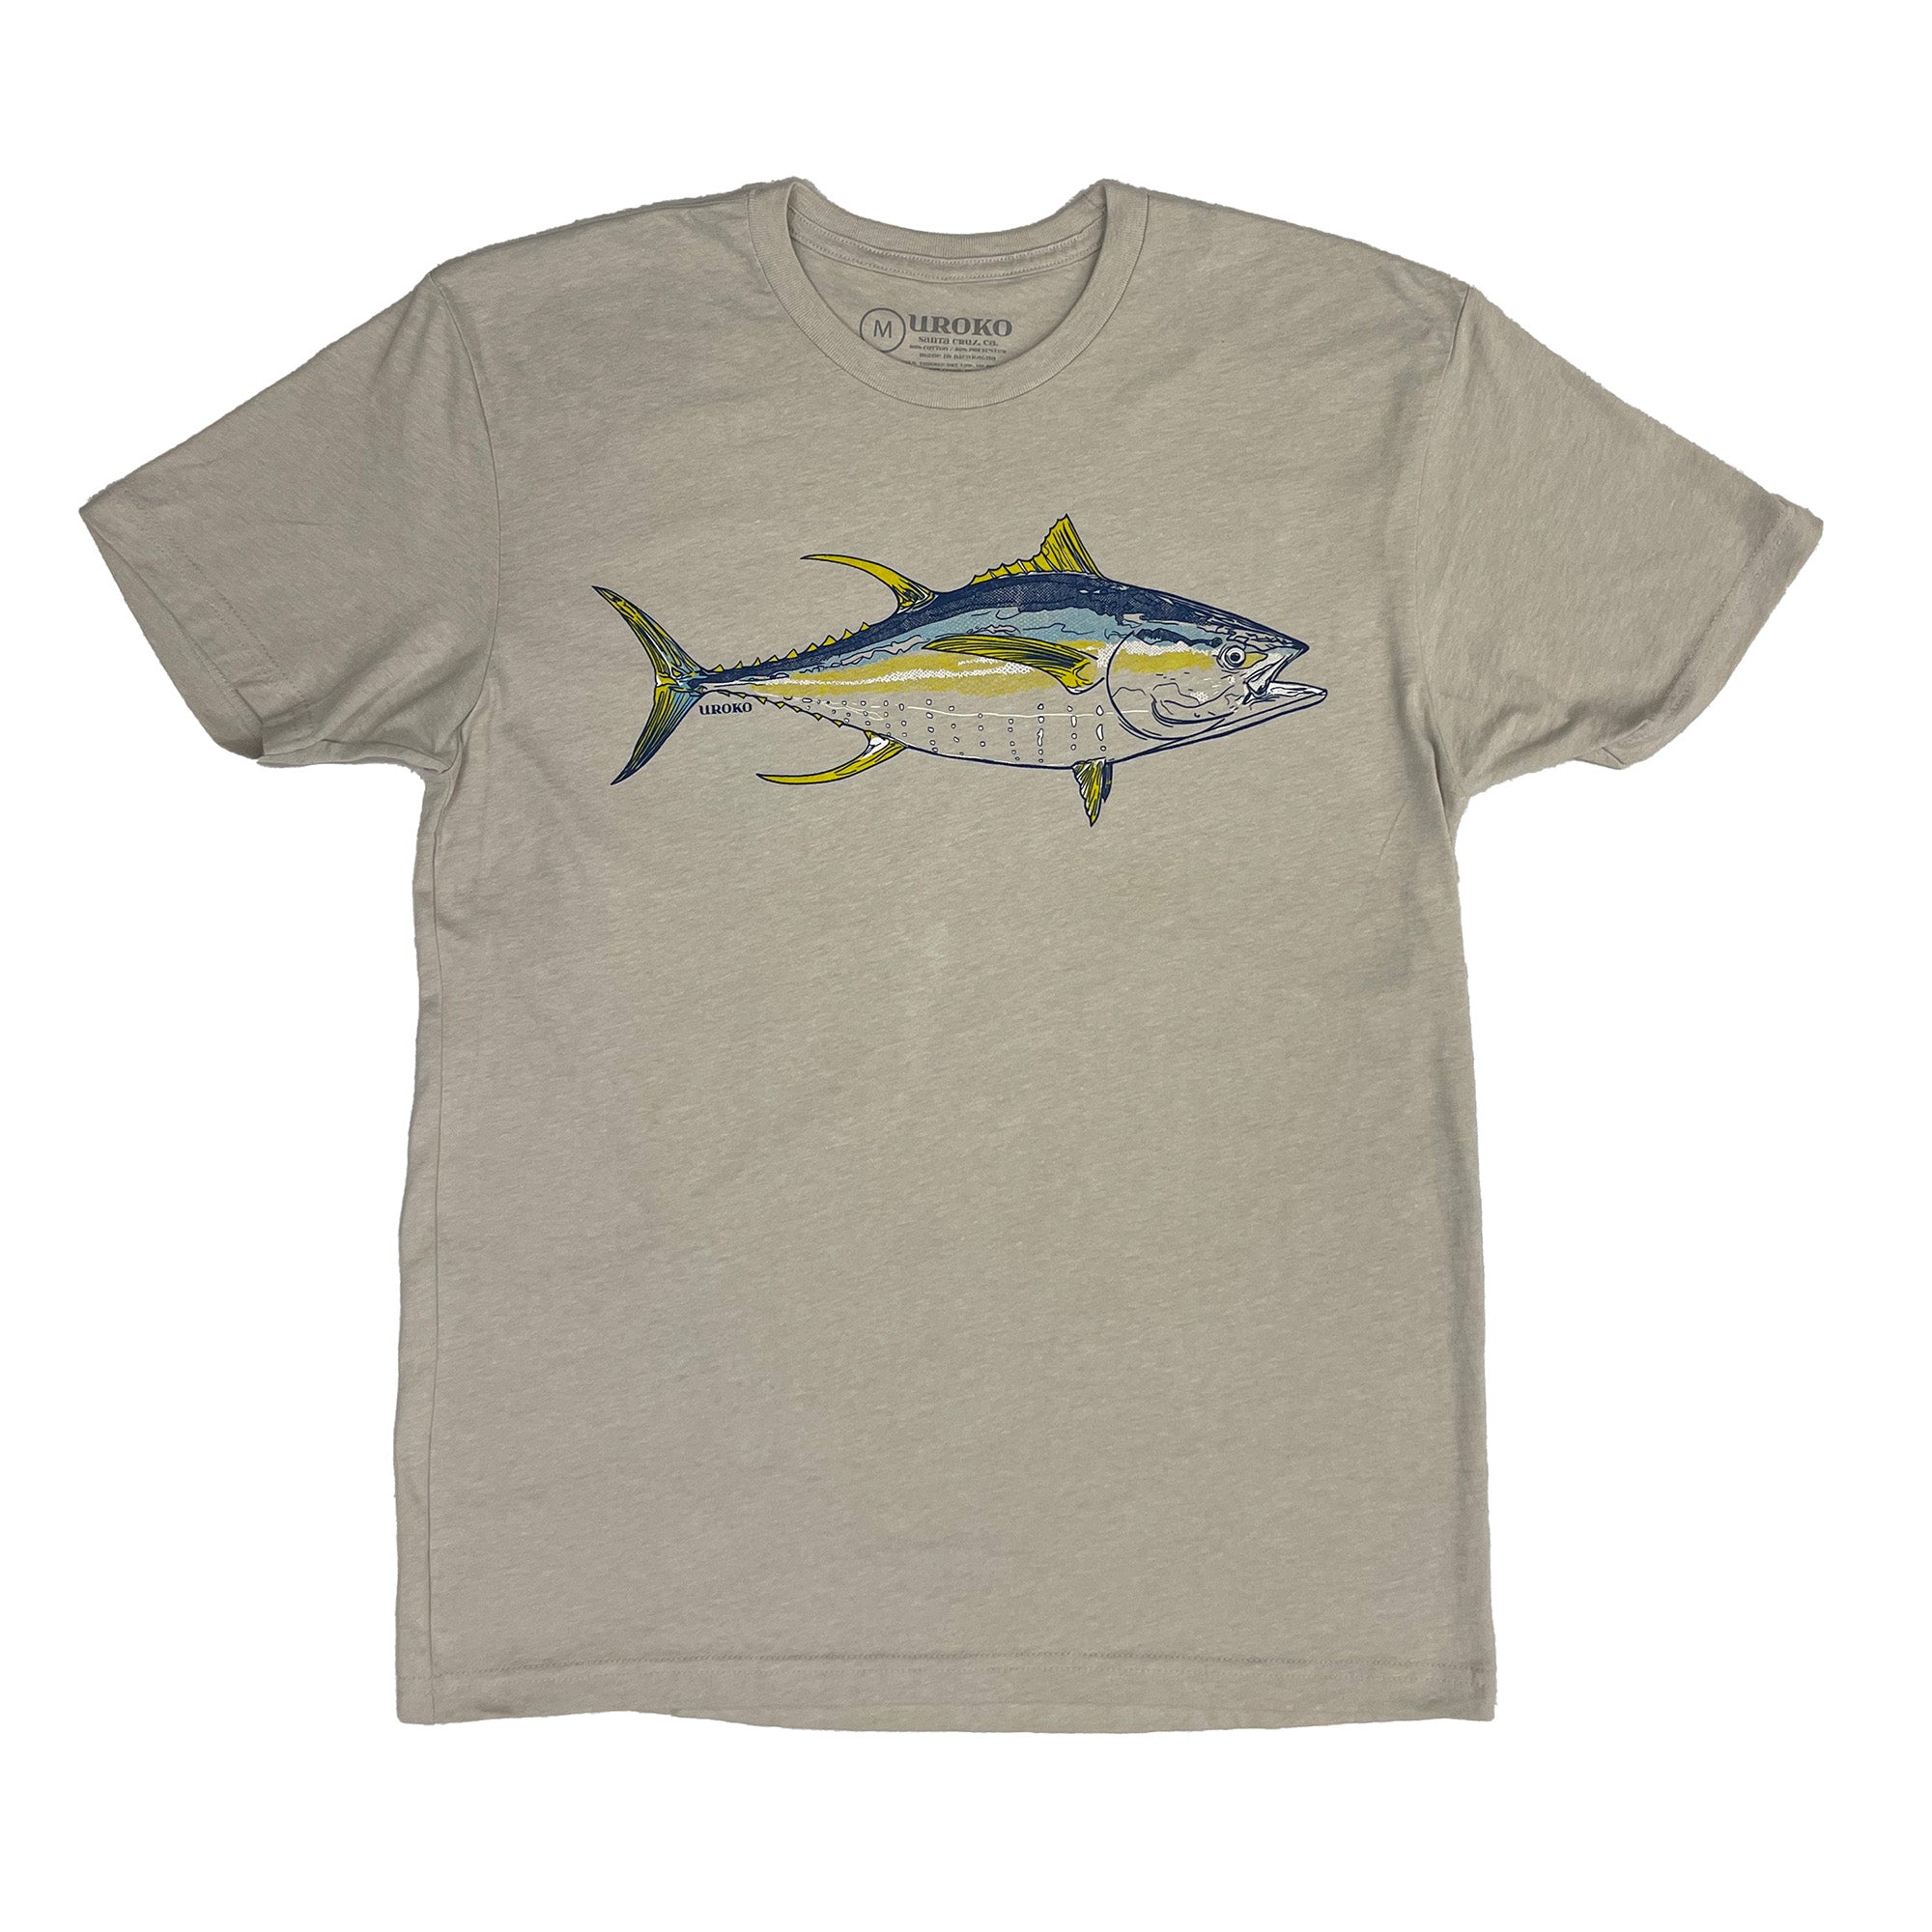 Yellowfin Tuna Shirt in Sand | Uroko X-Large